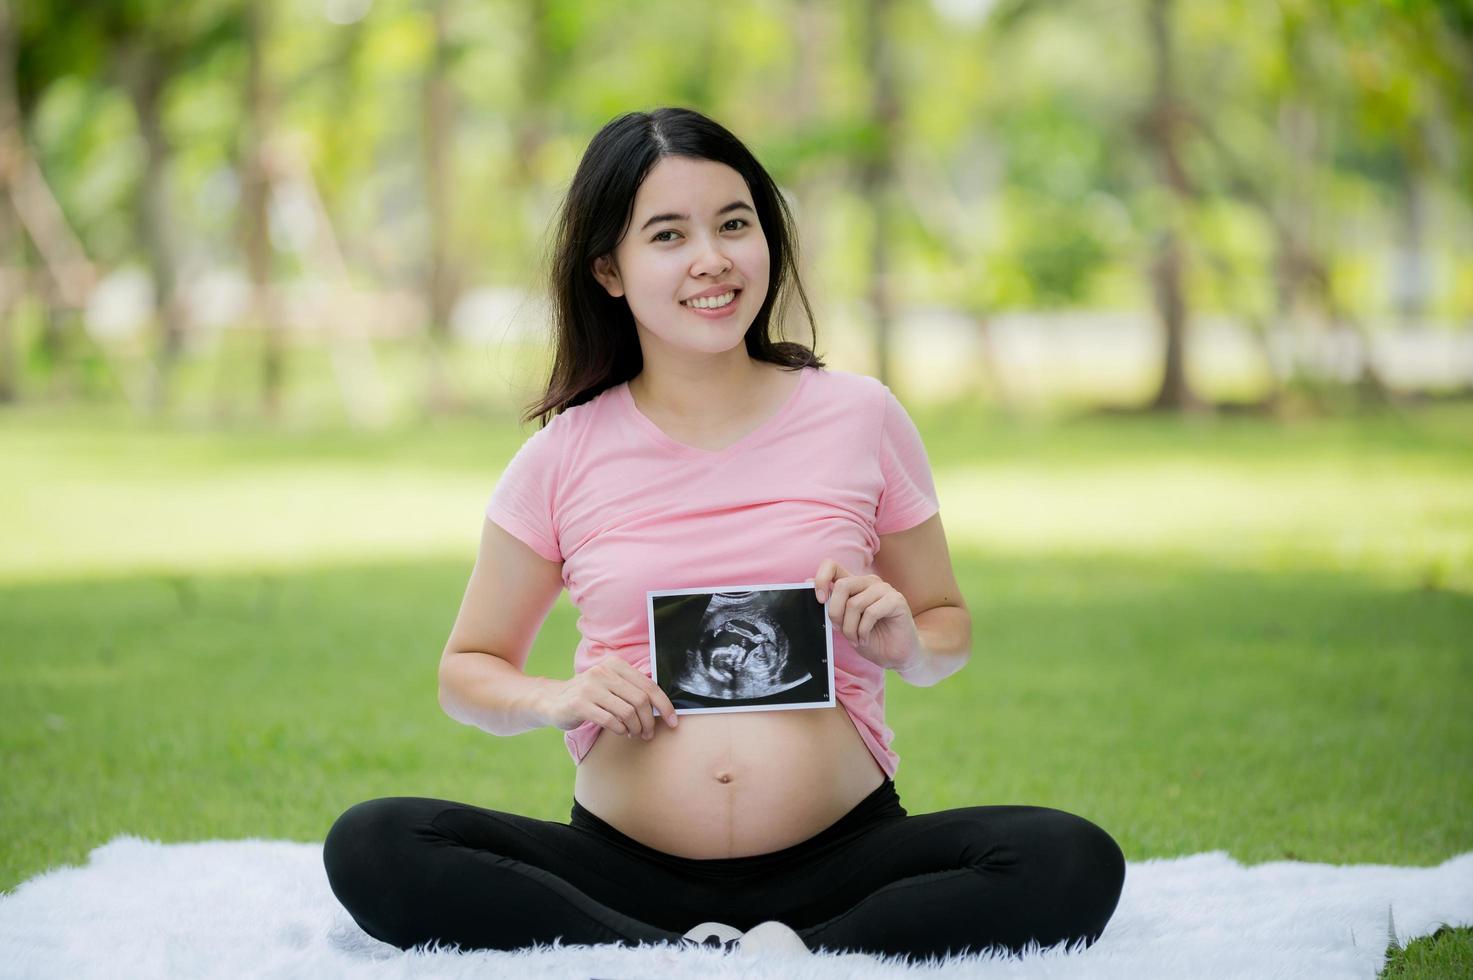 uma mulher asiática que está grávida pela primeira vez senta e relaxa para mostrar suas imagens de um ultra-som hospitalar para verificar a saúde de seu bebê em crescimento foto